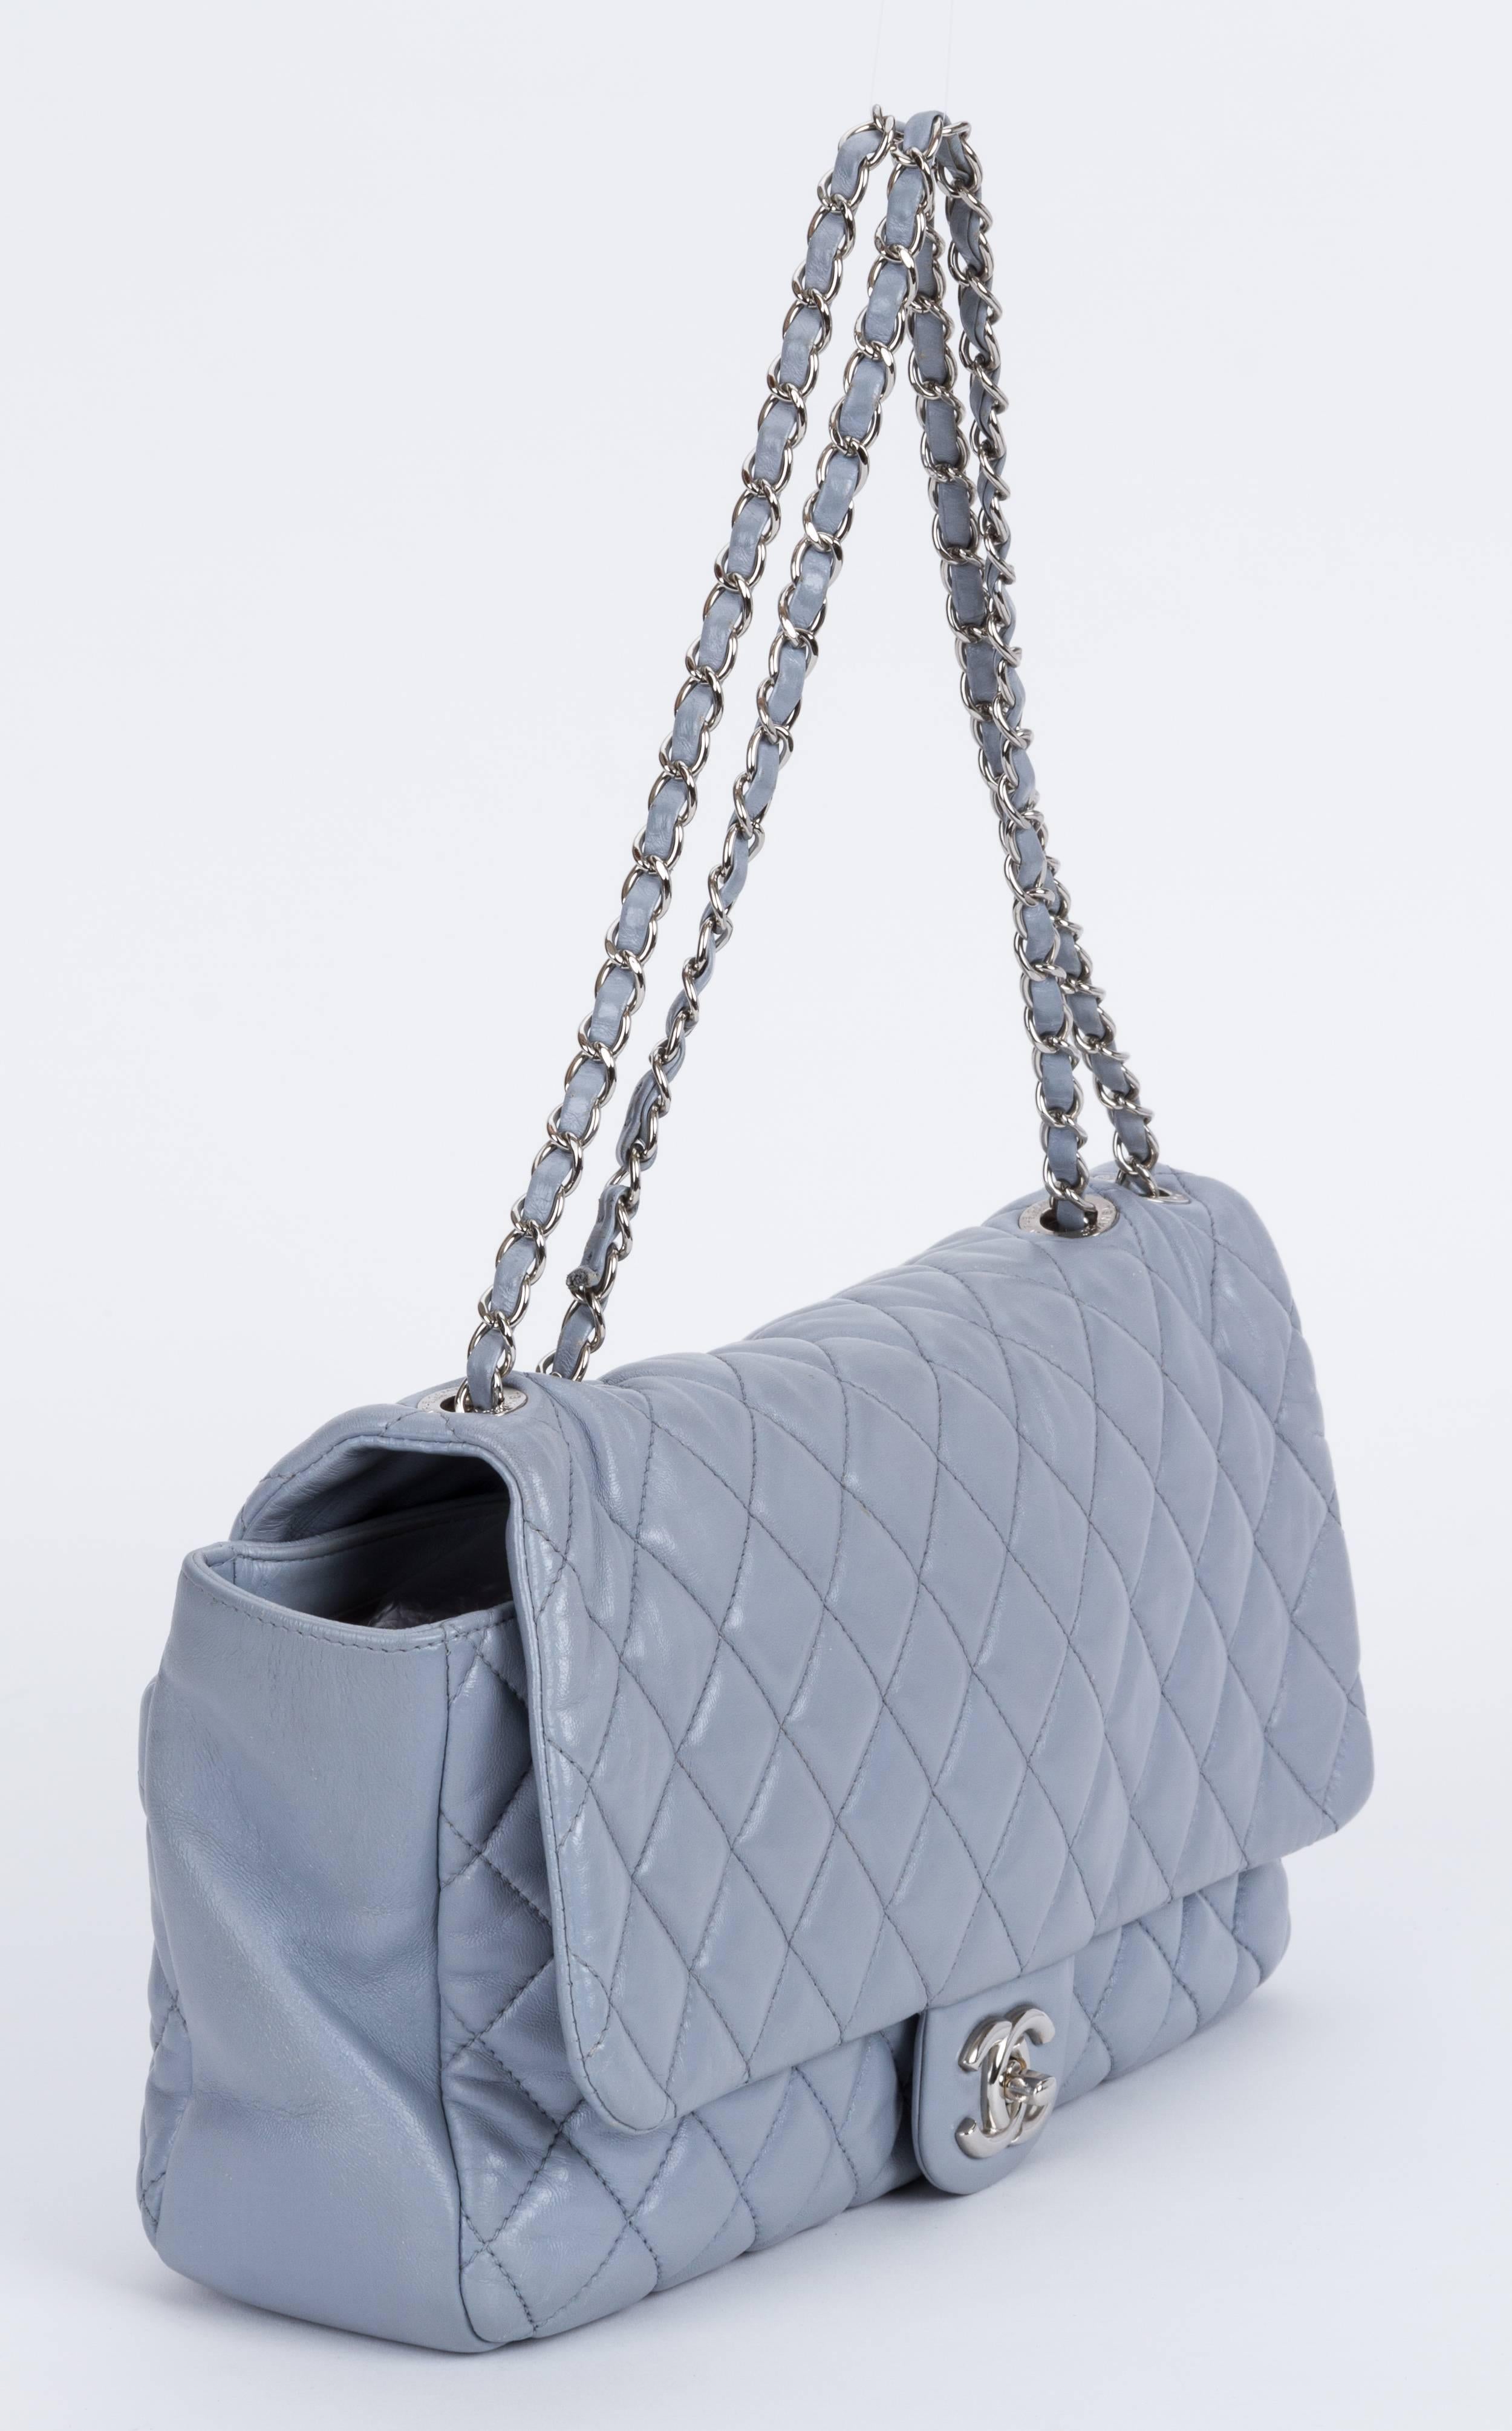 Chanel Rain Bag - 2 For Sale on 1stDibs